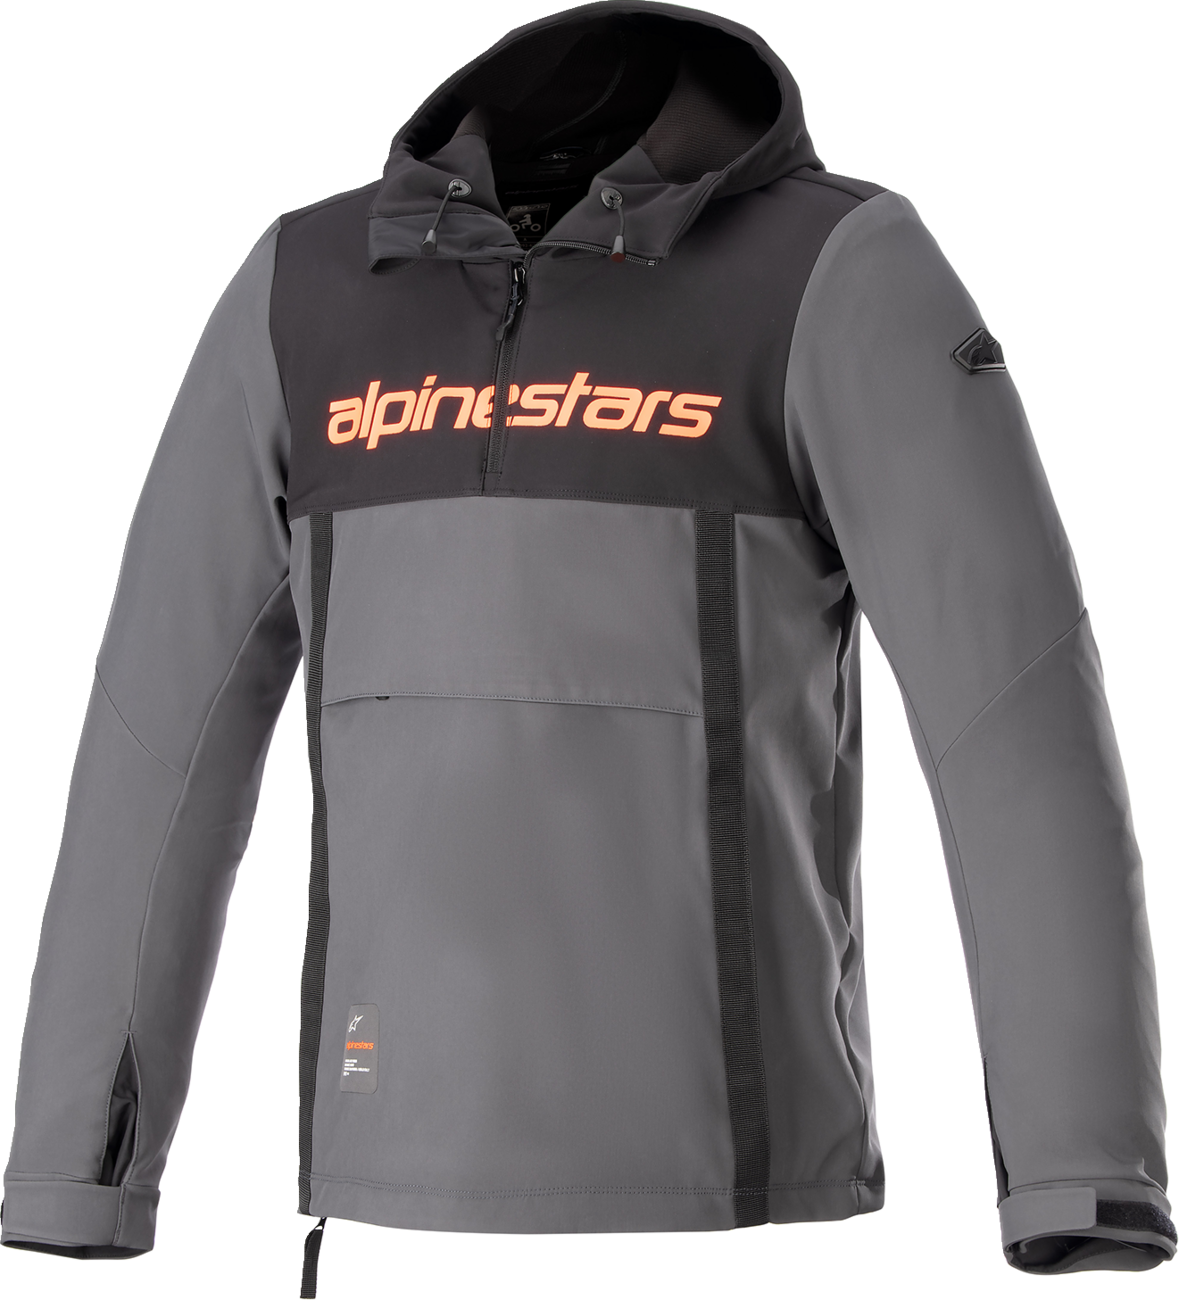 ALPINESTARS Sherpa Jacket - Black/Gray - Medium 4208123-1134-M